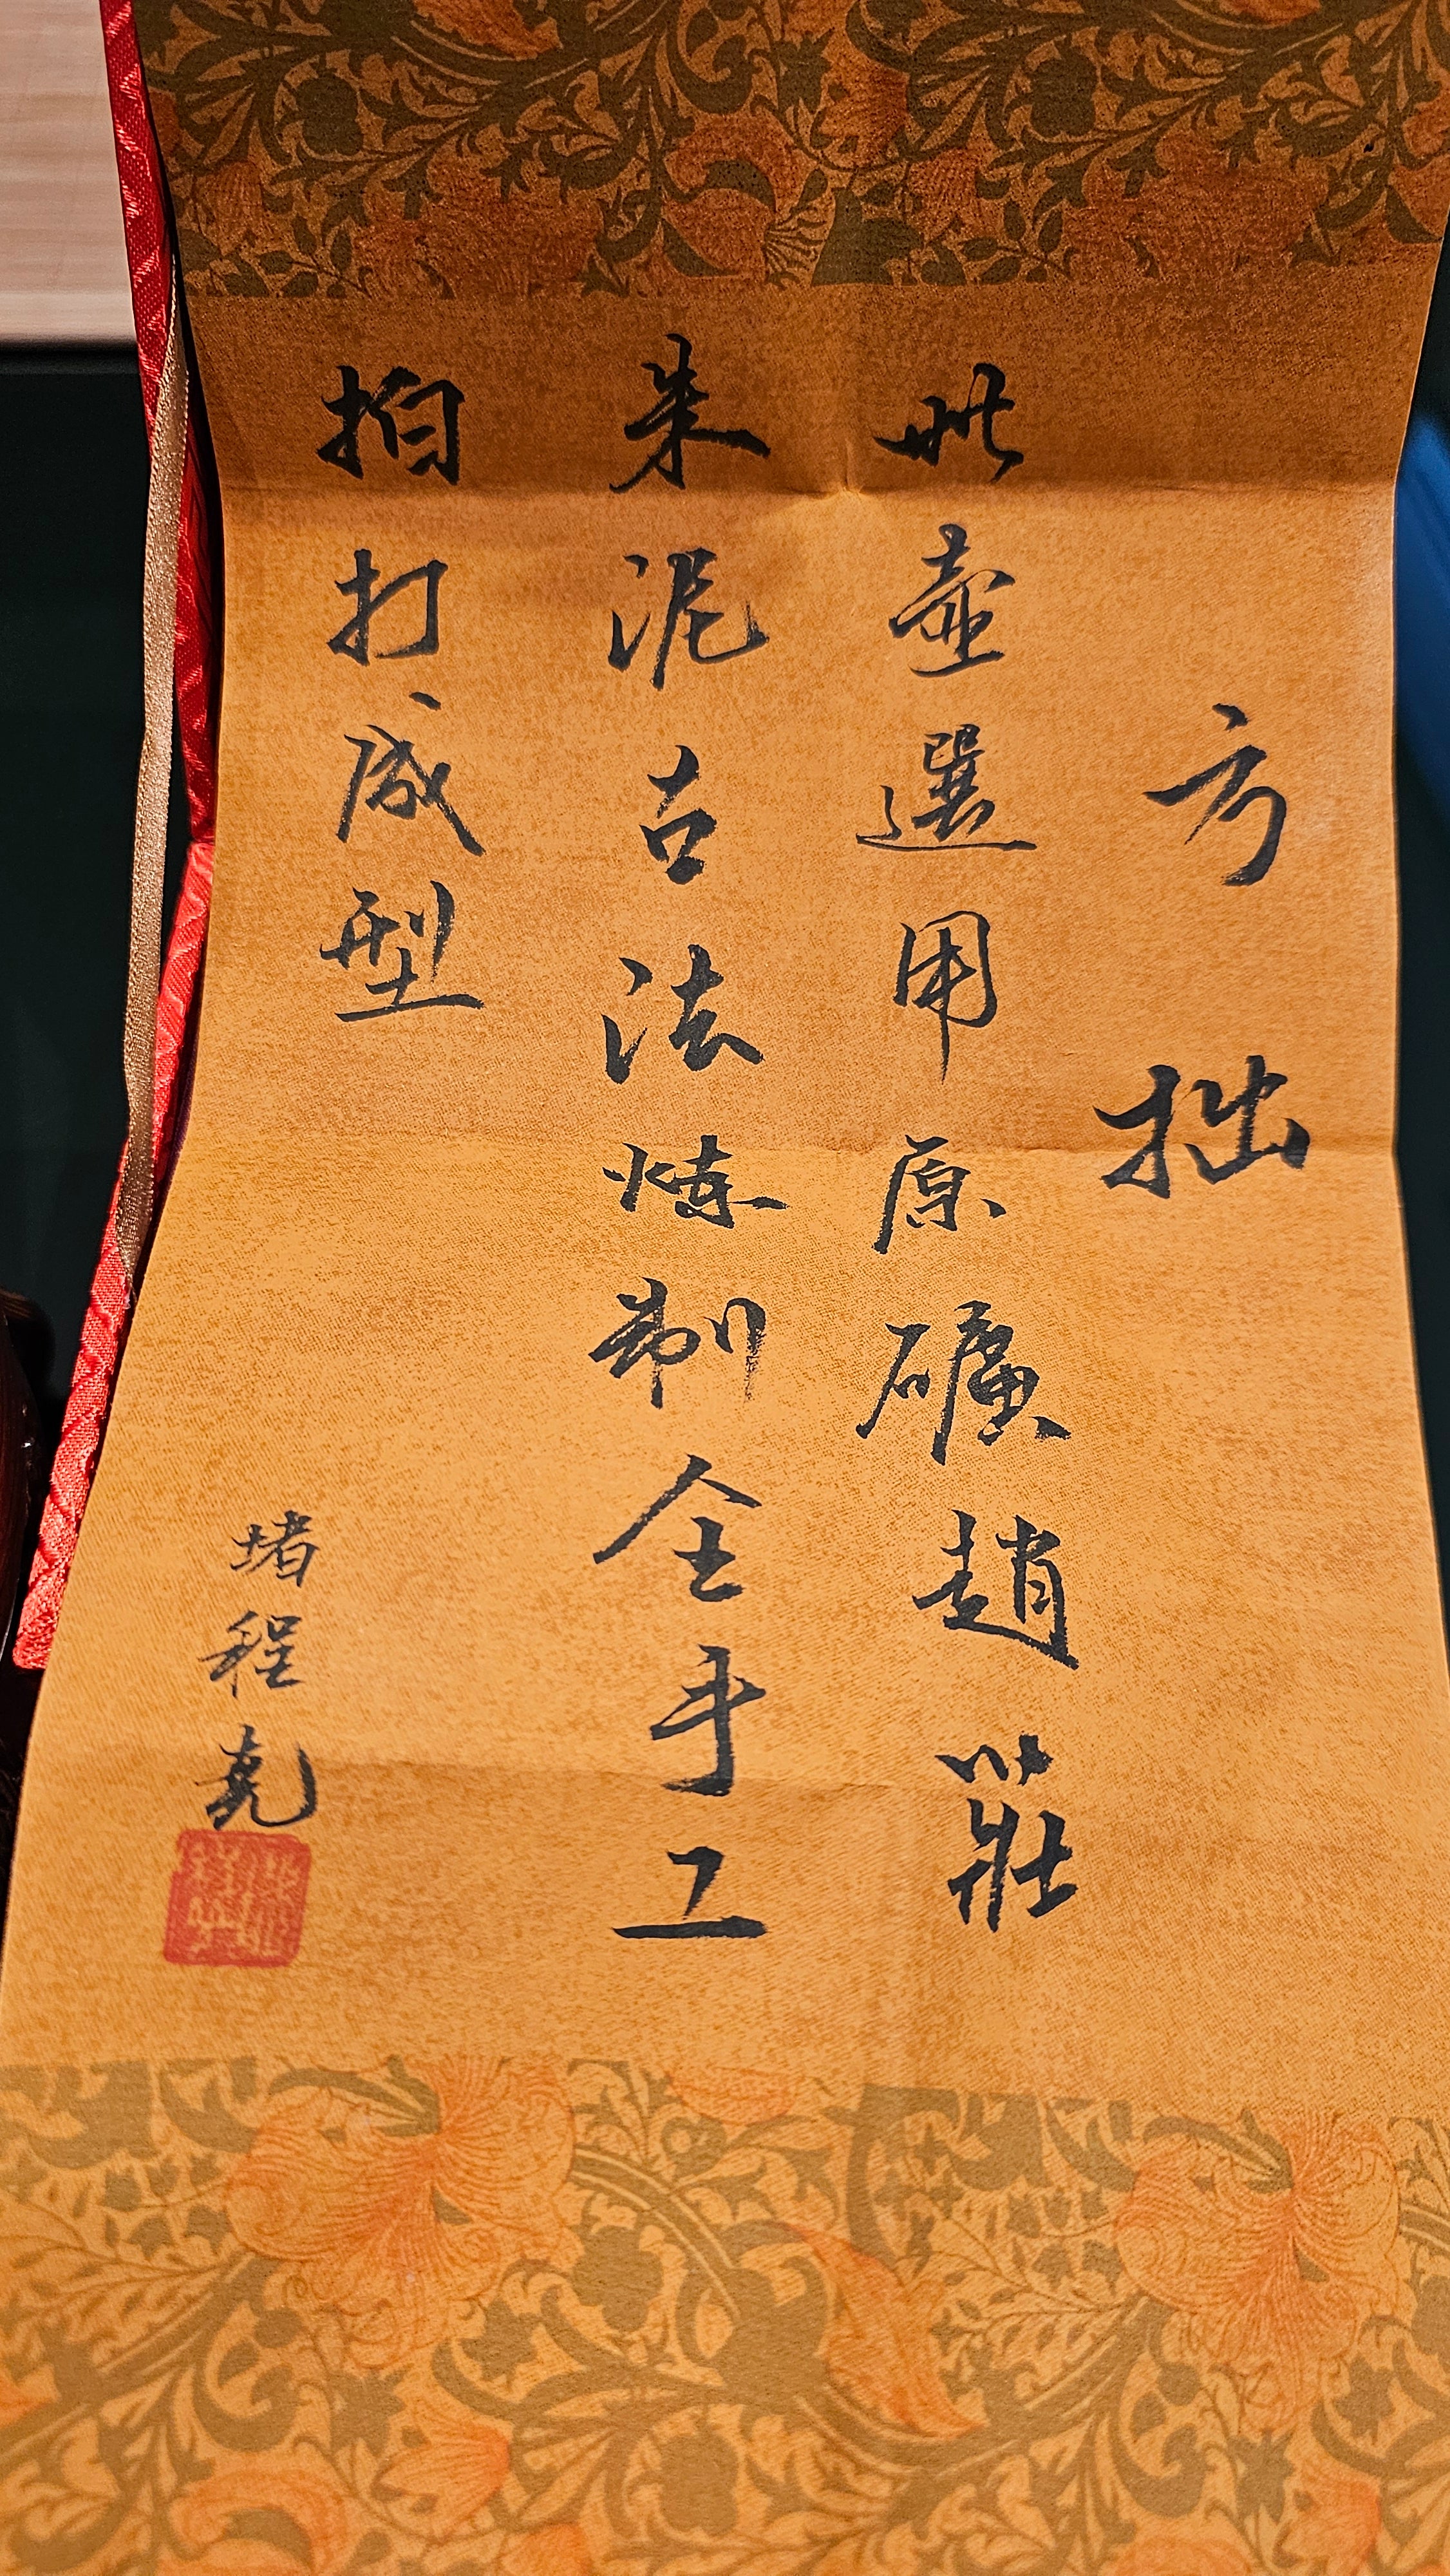 Fang Zhuo 方拙, 113.0ml, Gu Fa Lian Ni (Most Archaic Clay Forming) ~ Zhao Zhuang Zhu Ni *古法练泥~赵庄朱泥, L4 Assoc Master Du Cheng Yao 堵程尧。